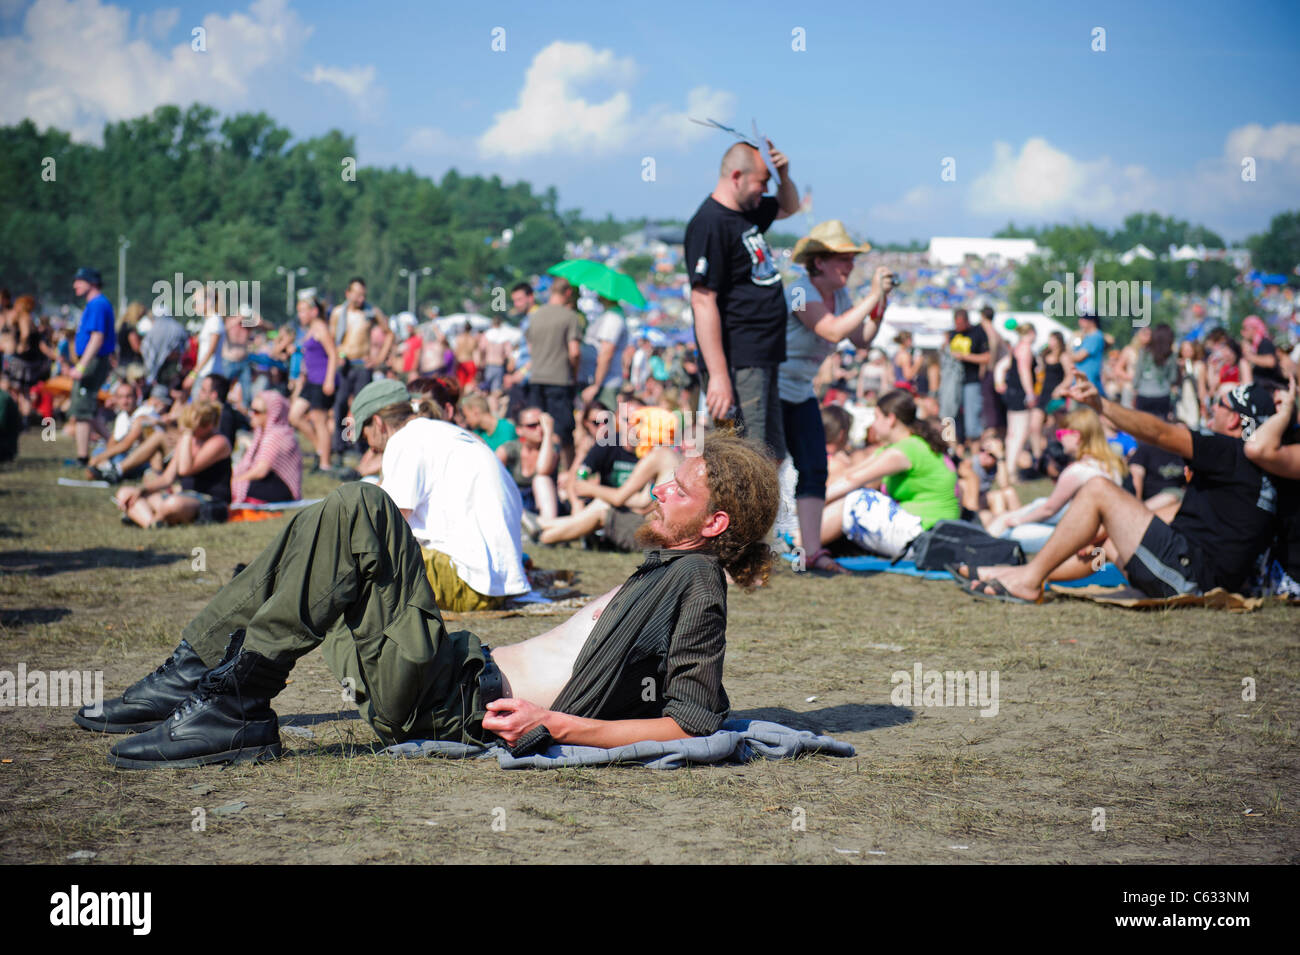 people enjoying the Przystanek Woodstock - Europe's largest open air festival in Kostrzyn, Poland Stock Photo